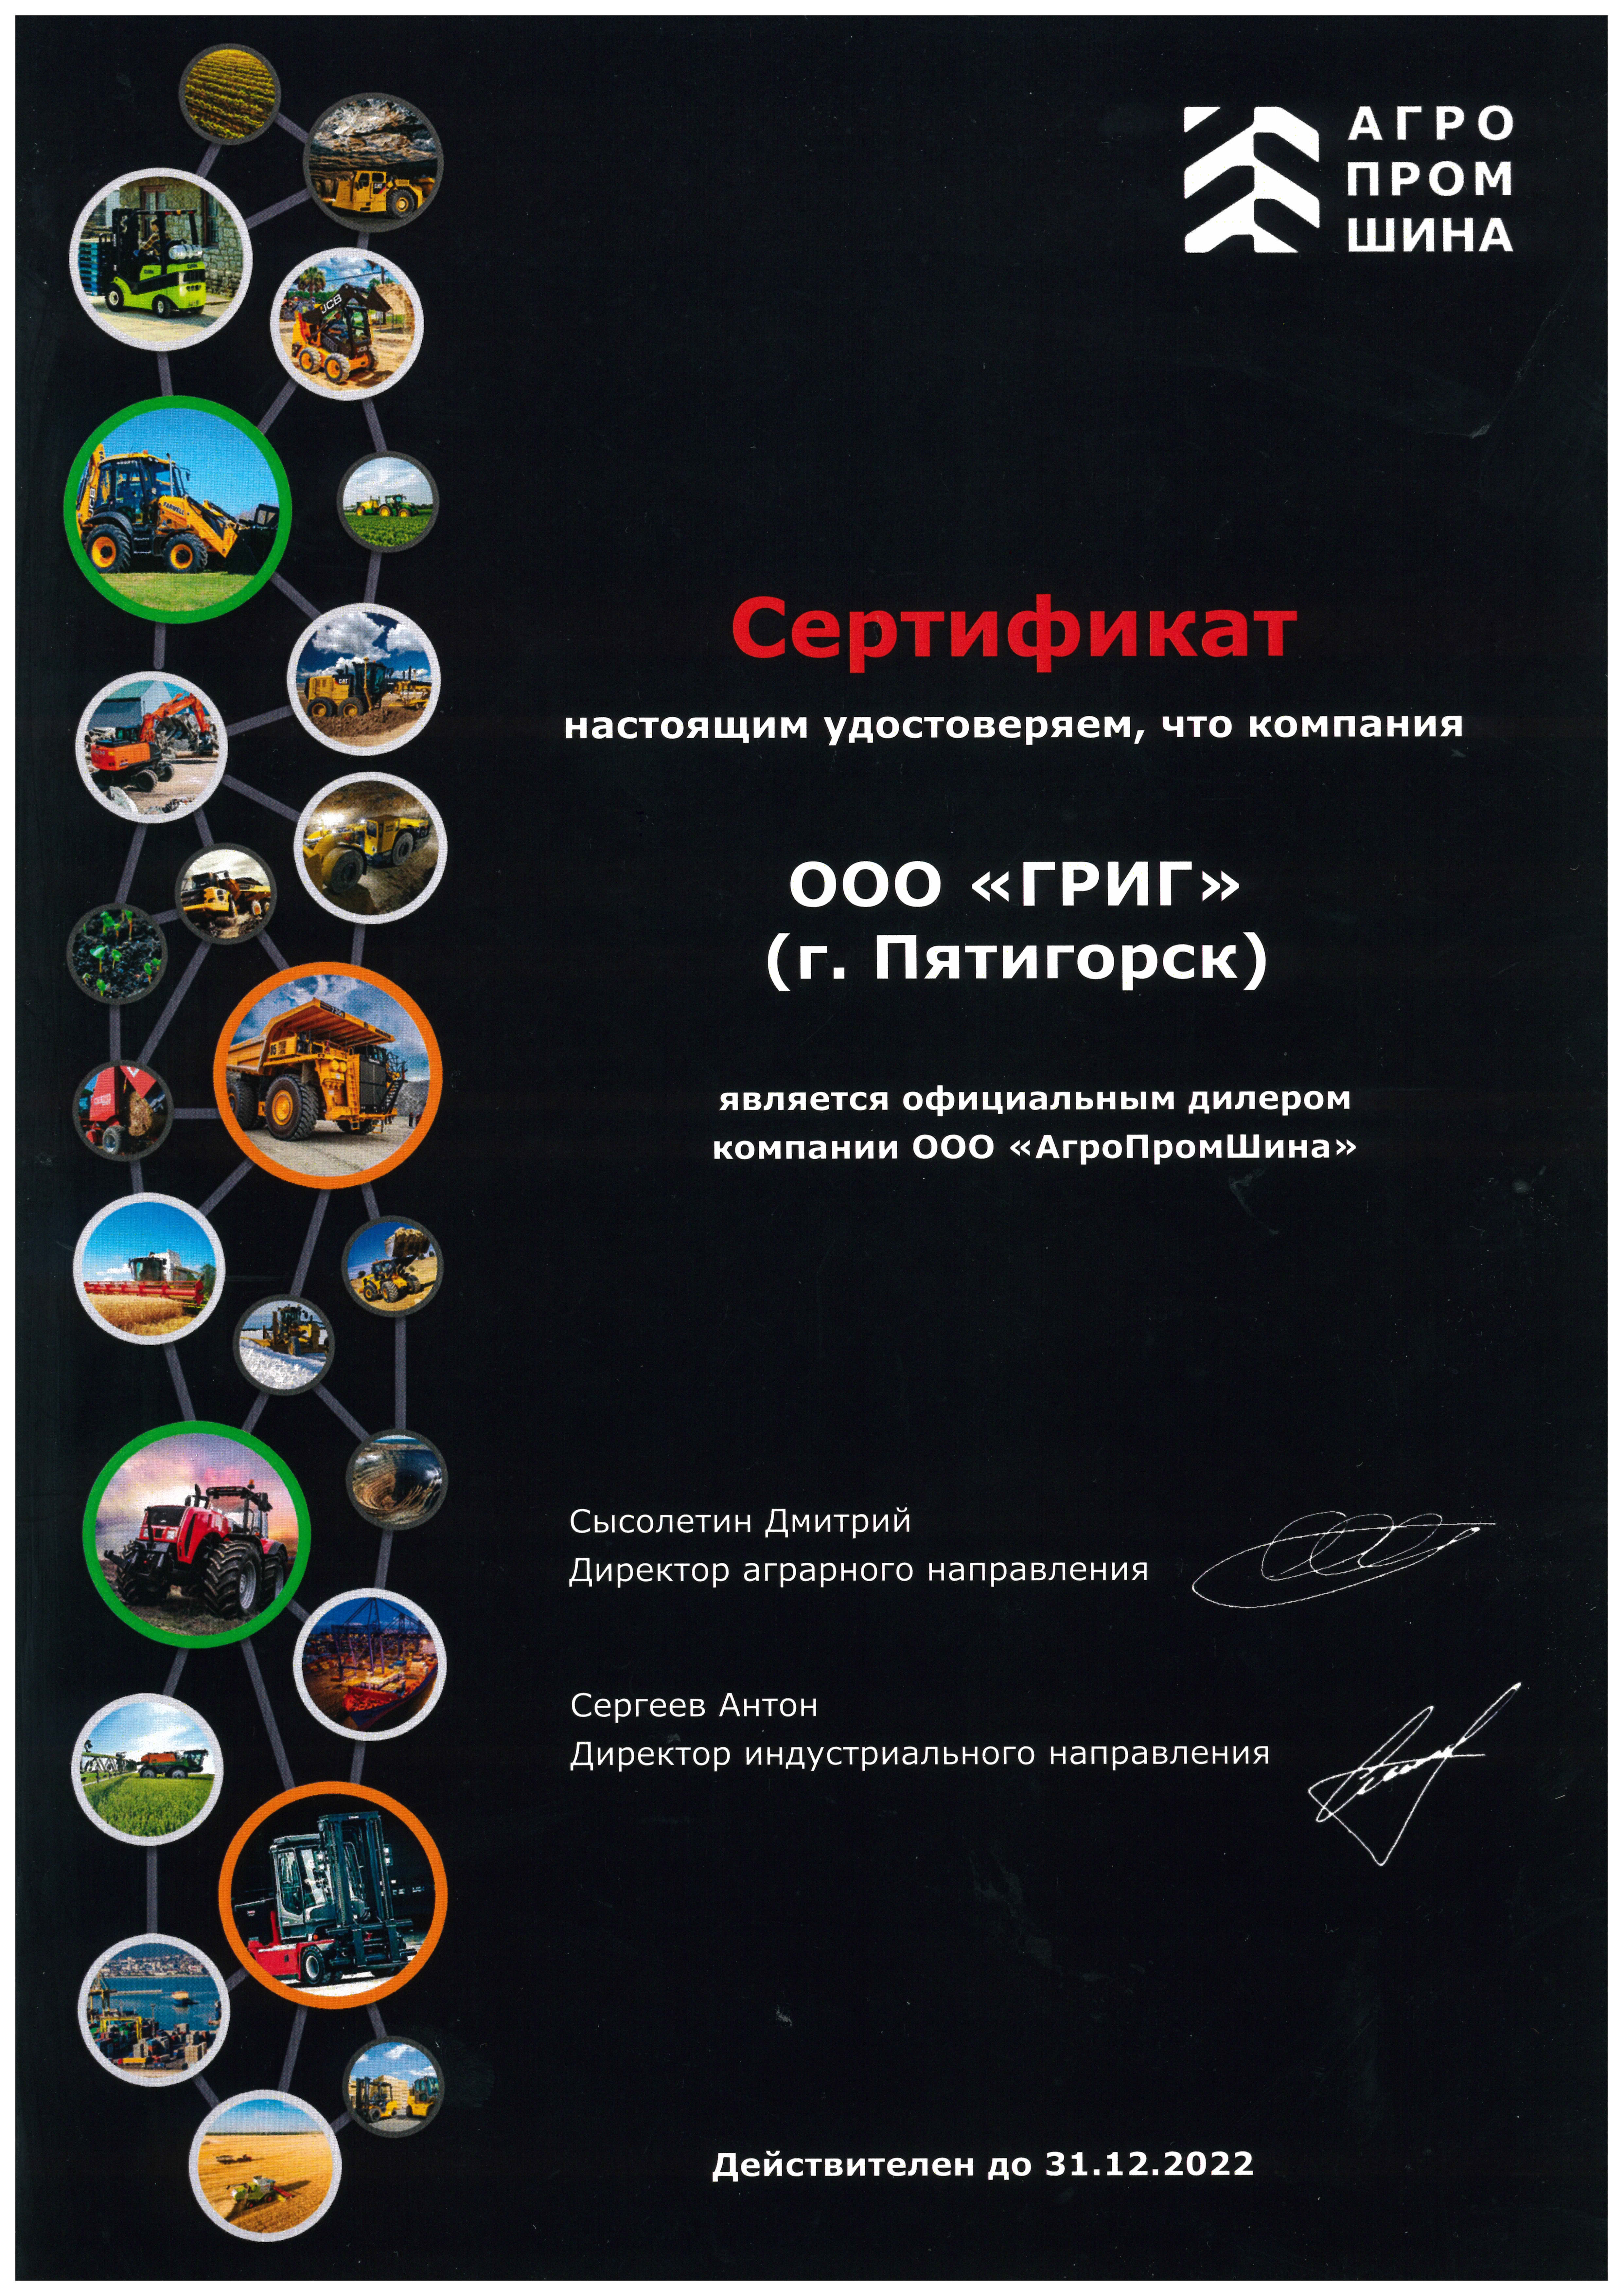 Сертификат Официального дилера ООО АгроПромШина" 2022